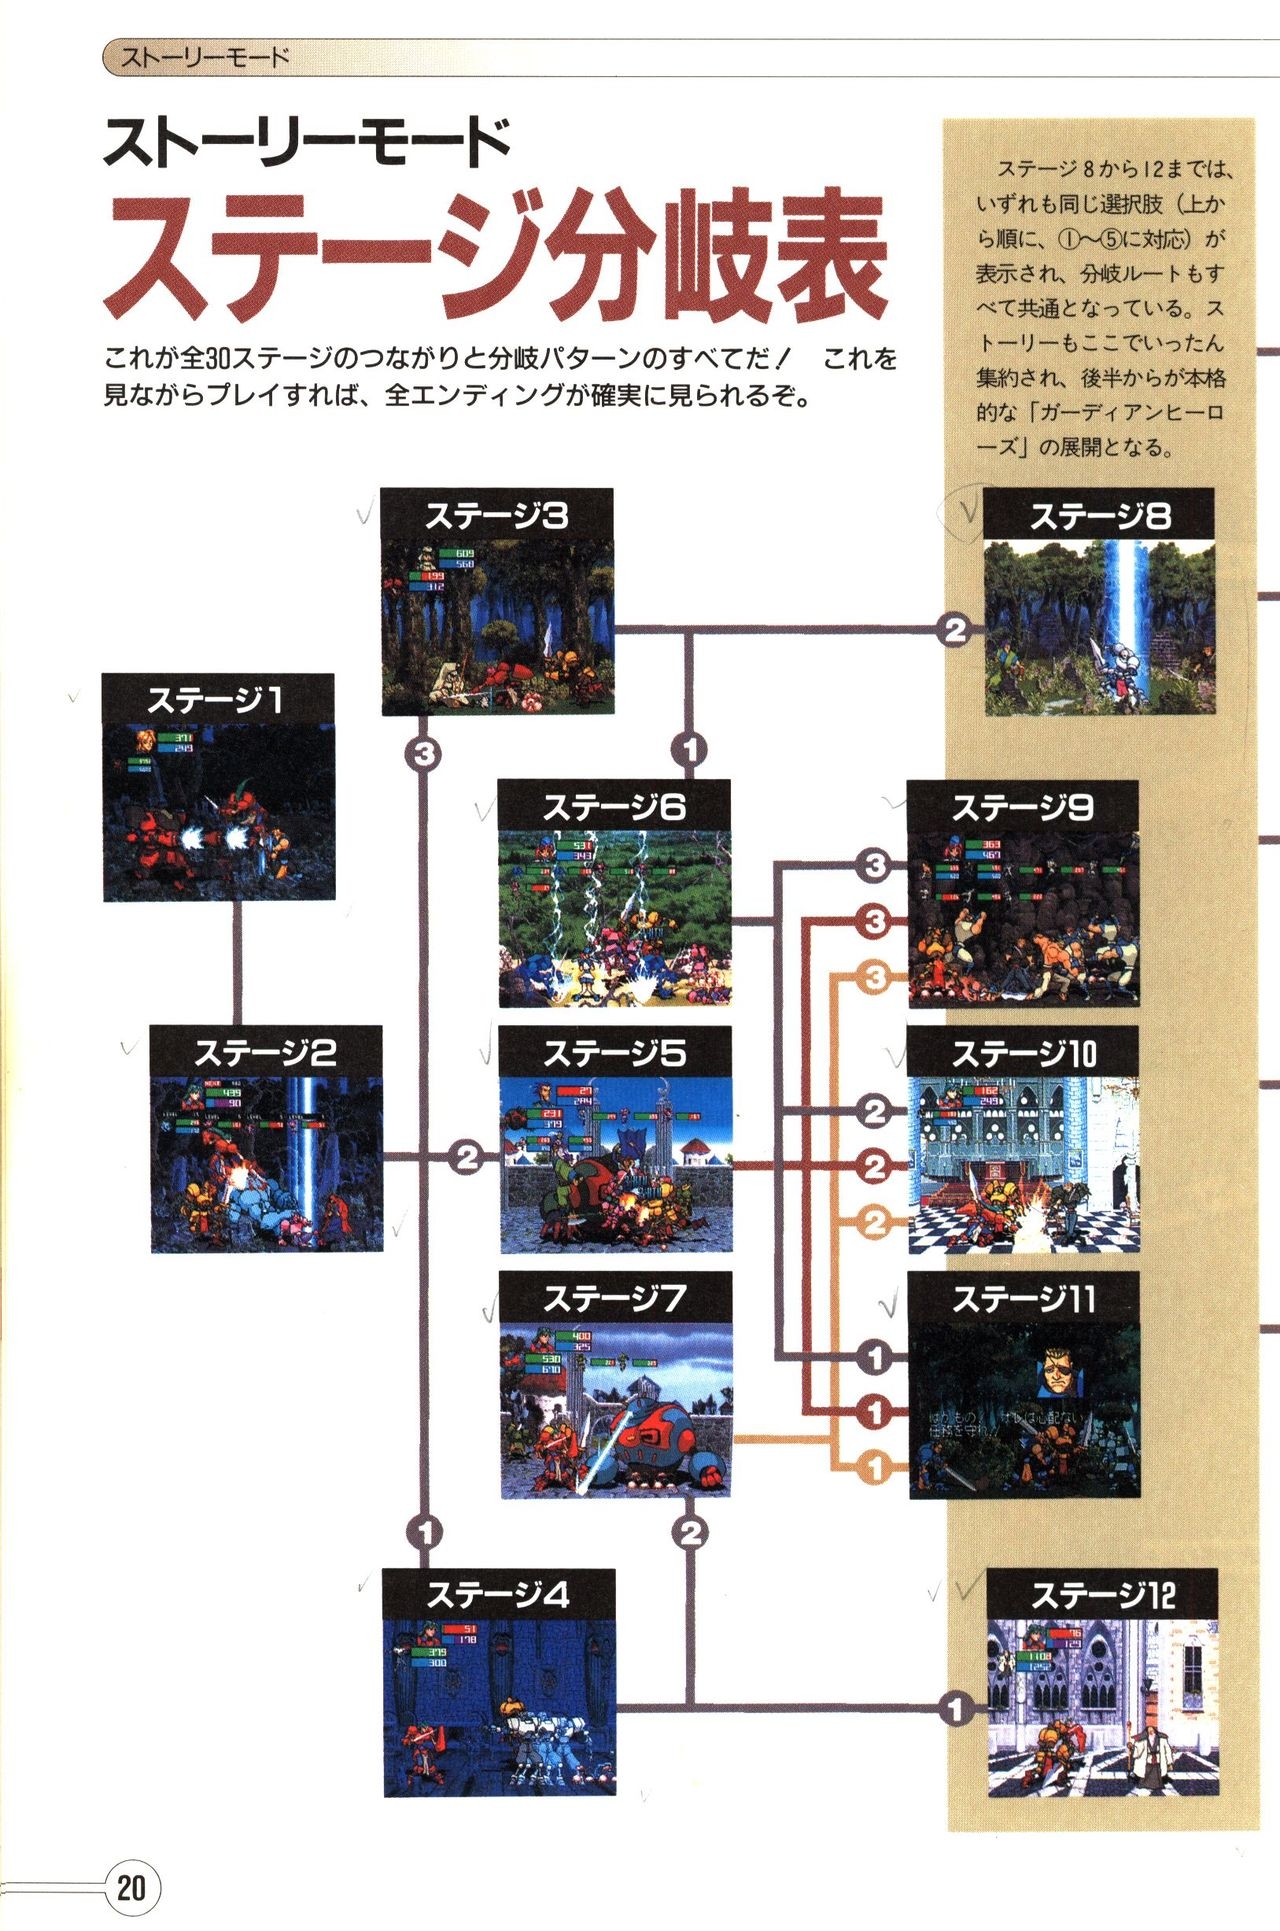 Guardian Heroes Perfect Guide (Sega Saturn magazine books) 22